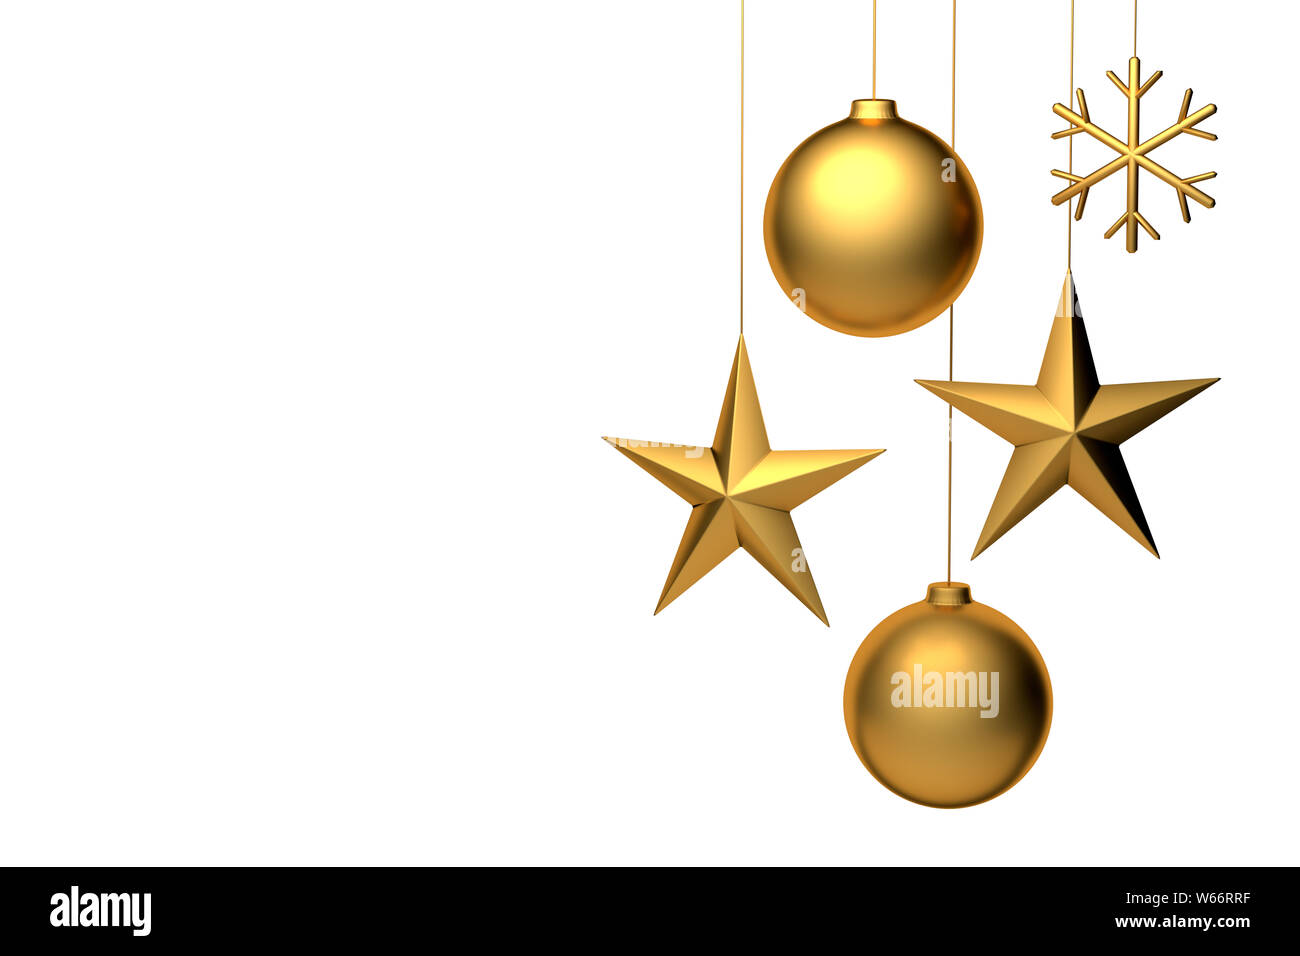 3D-Rendering von golden Weihnachtsschmuck: Ball, Stern, Schneeflocke. Copyspace für benutzerdefinierte Text zur Verfügung. Auf weiß Isoliert Stockfoto